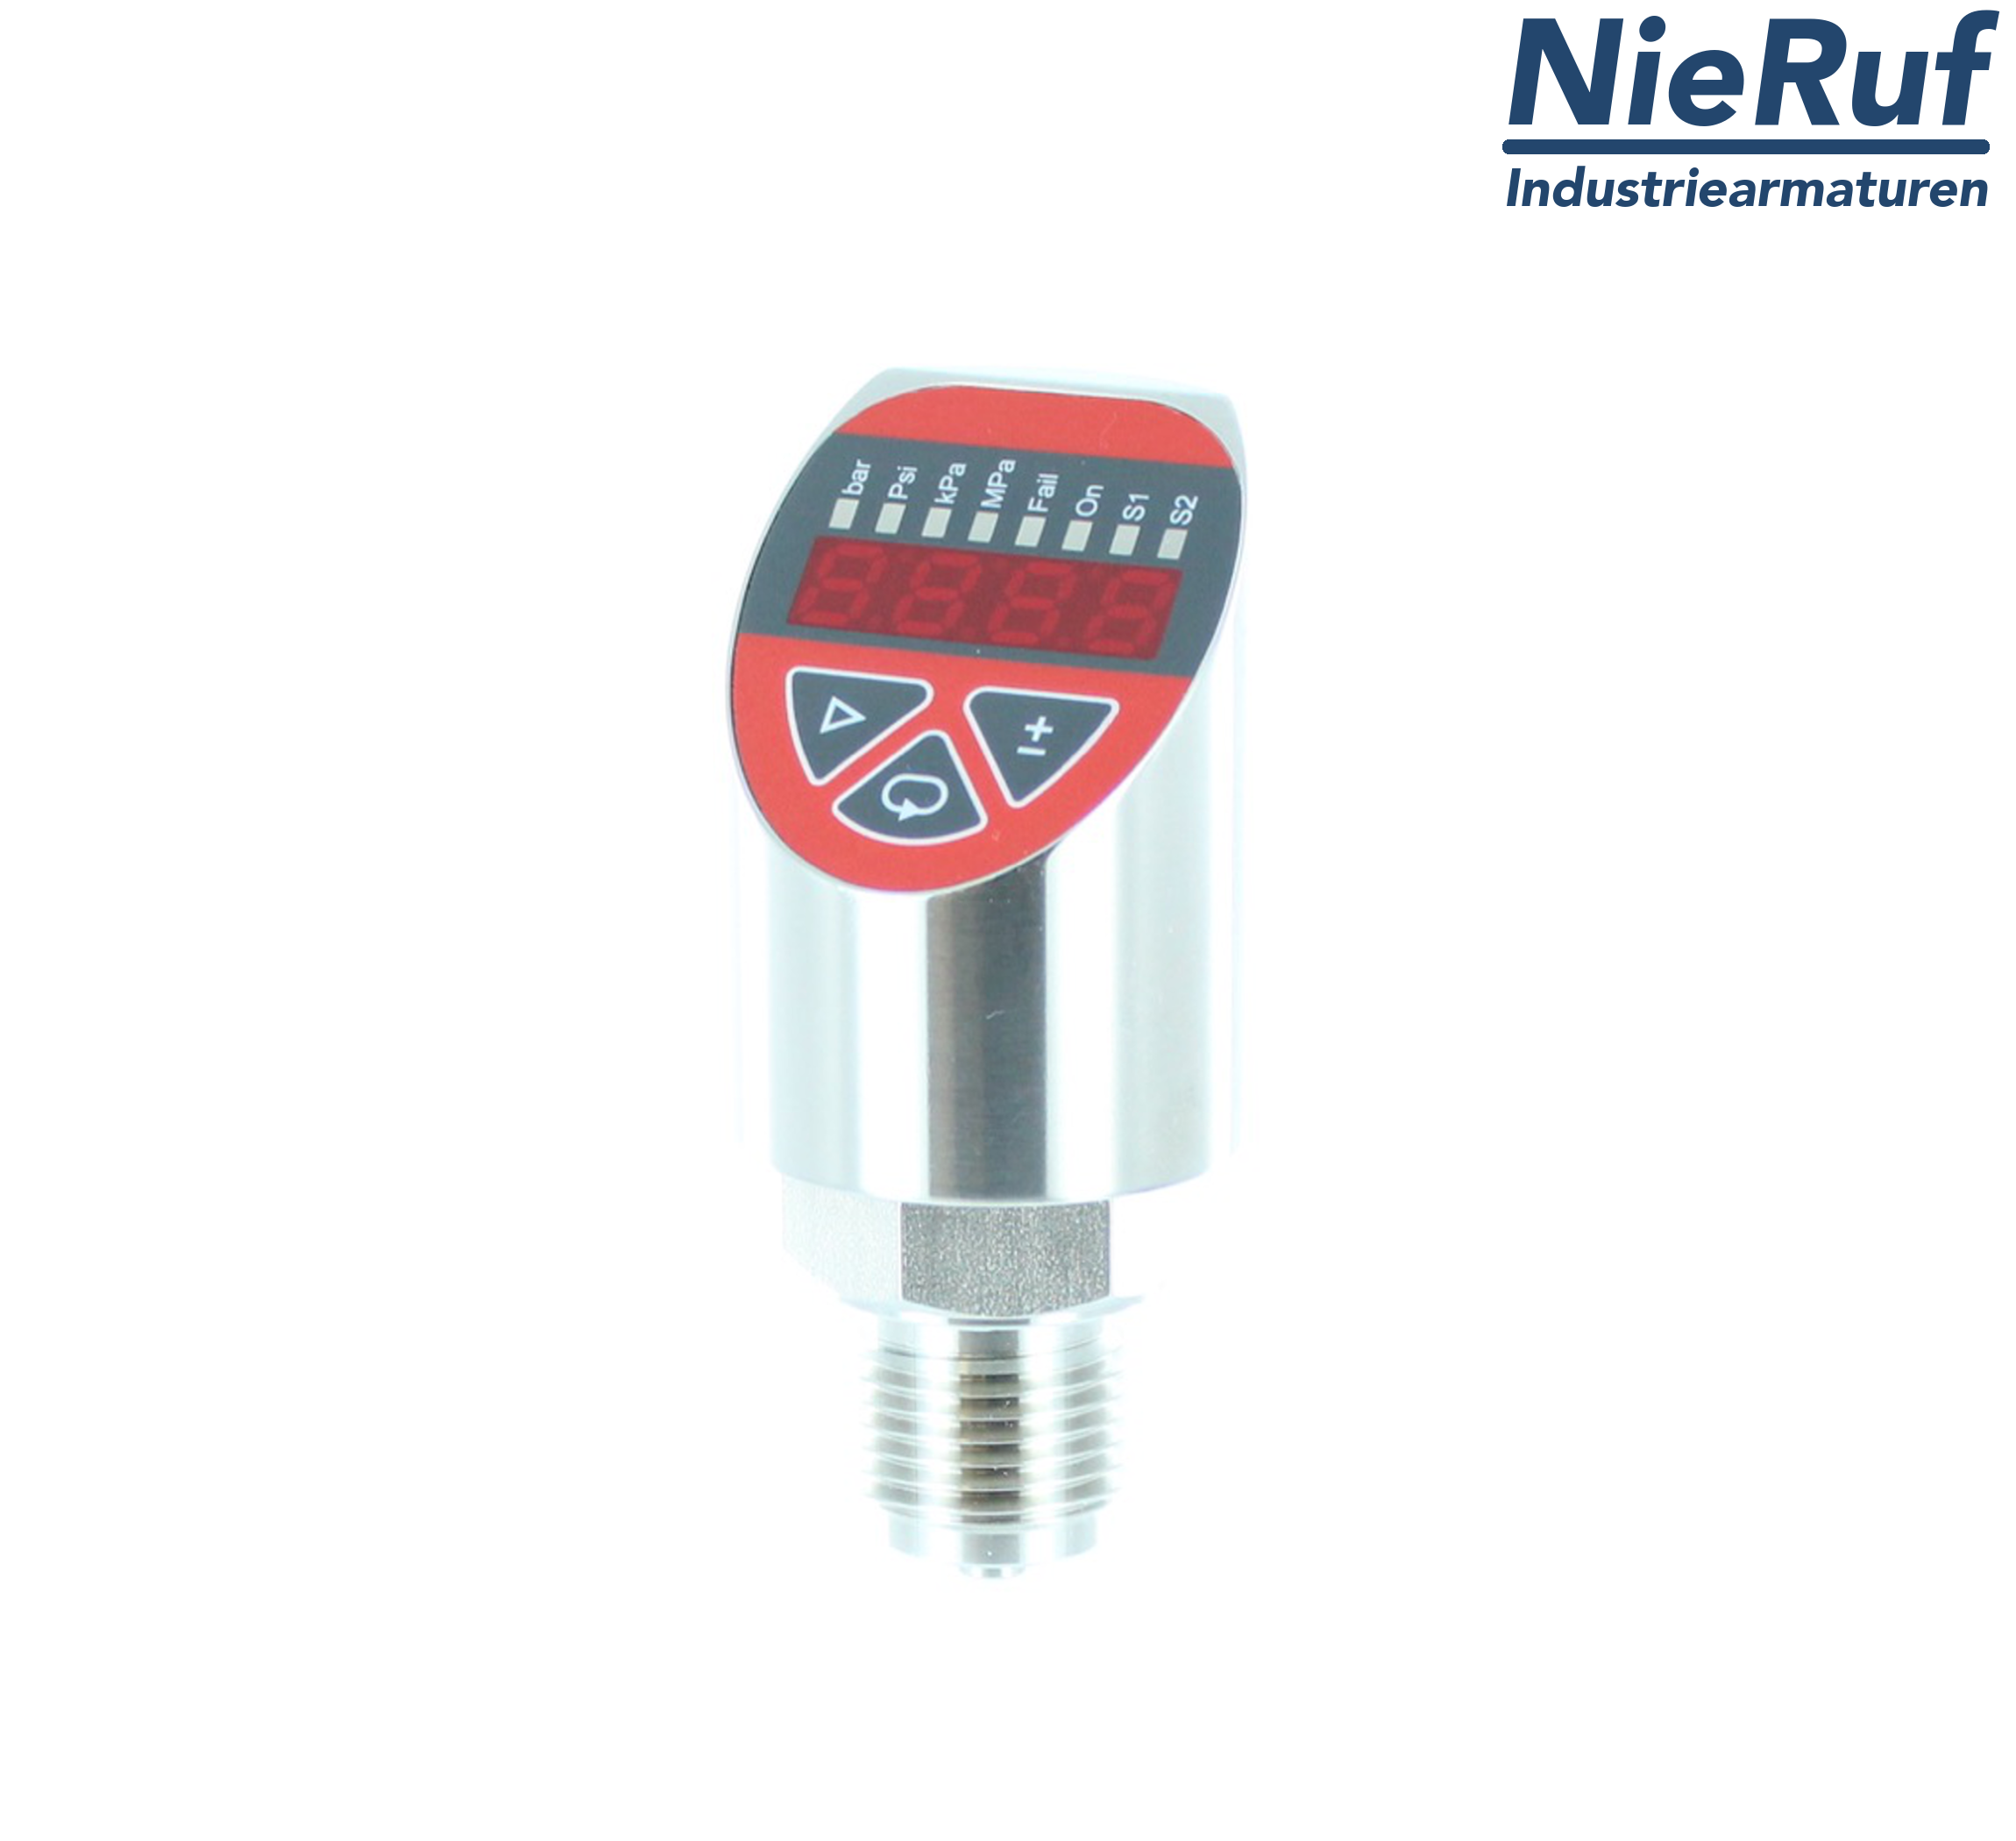 digital pressure sensor G 1/2" B 4-wire: 1xPNP, 1x4 - 20mA, Desina FPM 0,0 - 100,0 bar